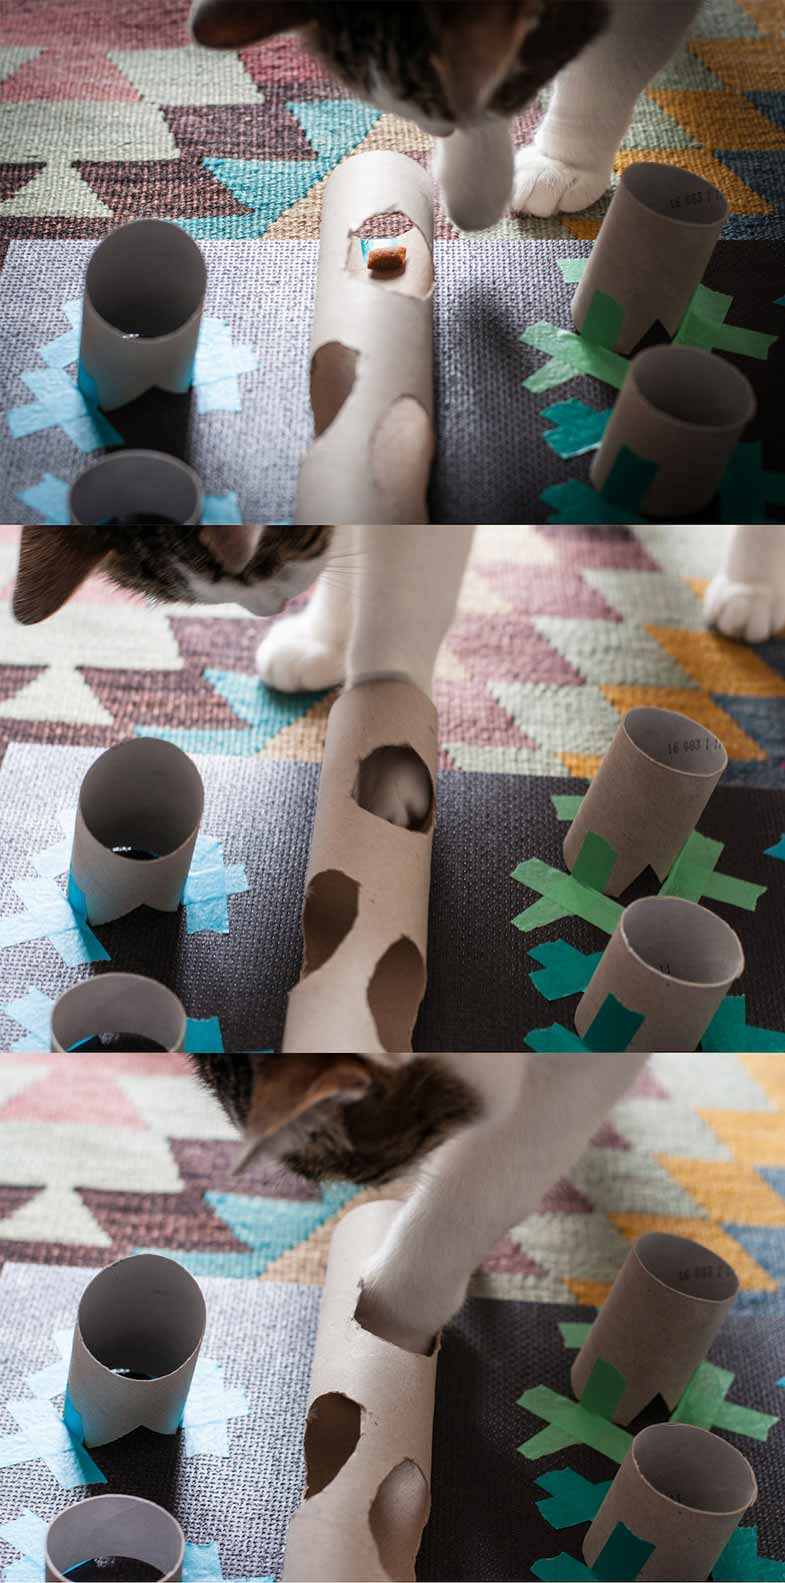 Katze spielt mit selbstgebauten Spielzeug